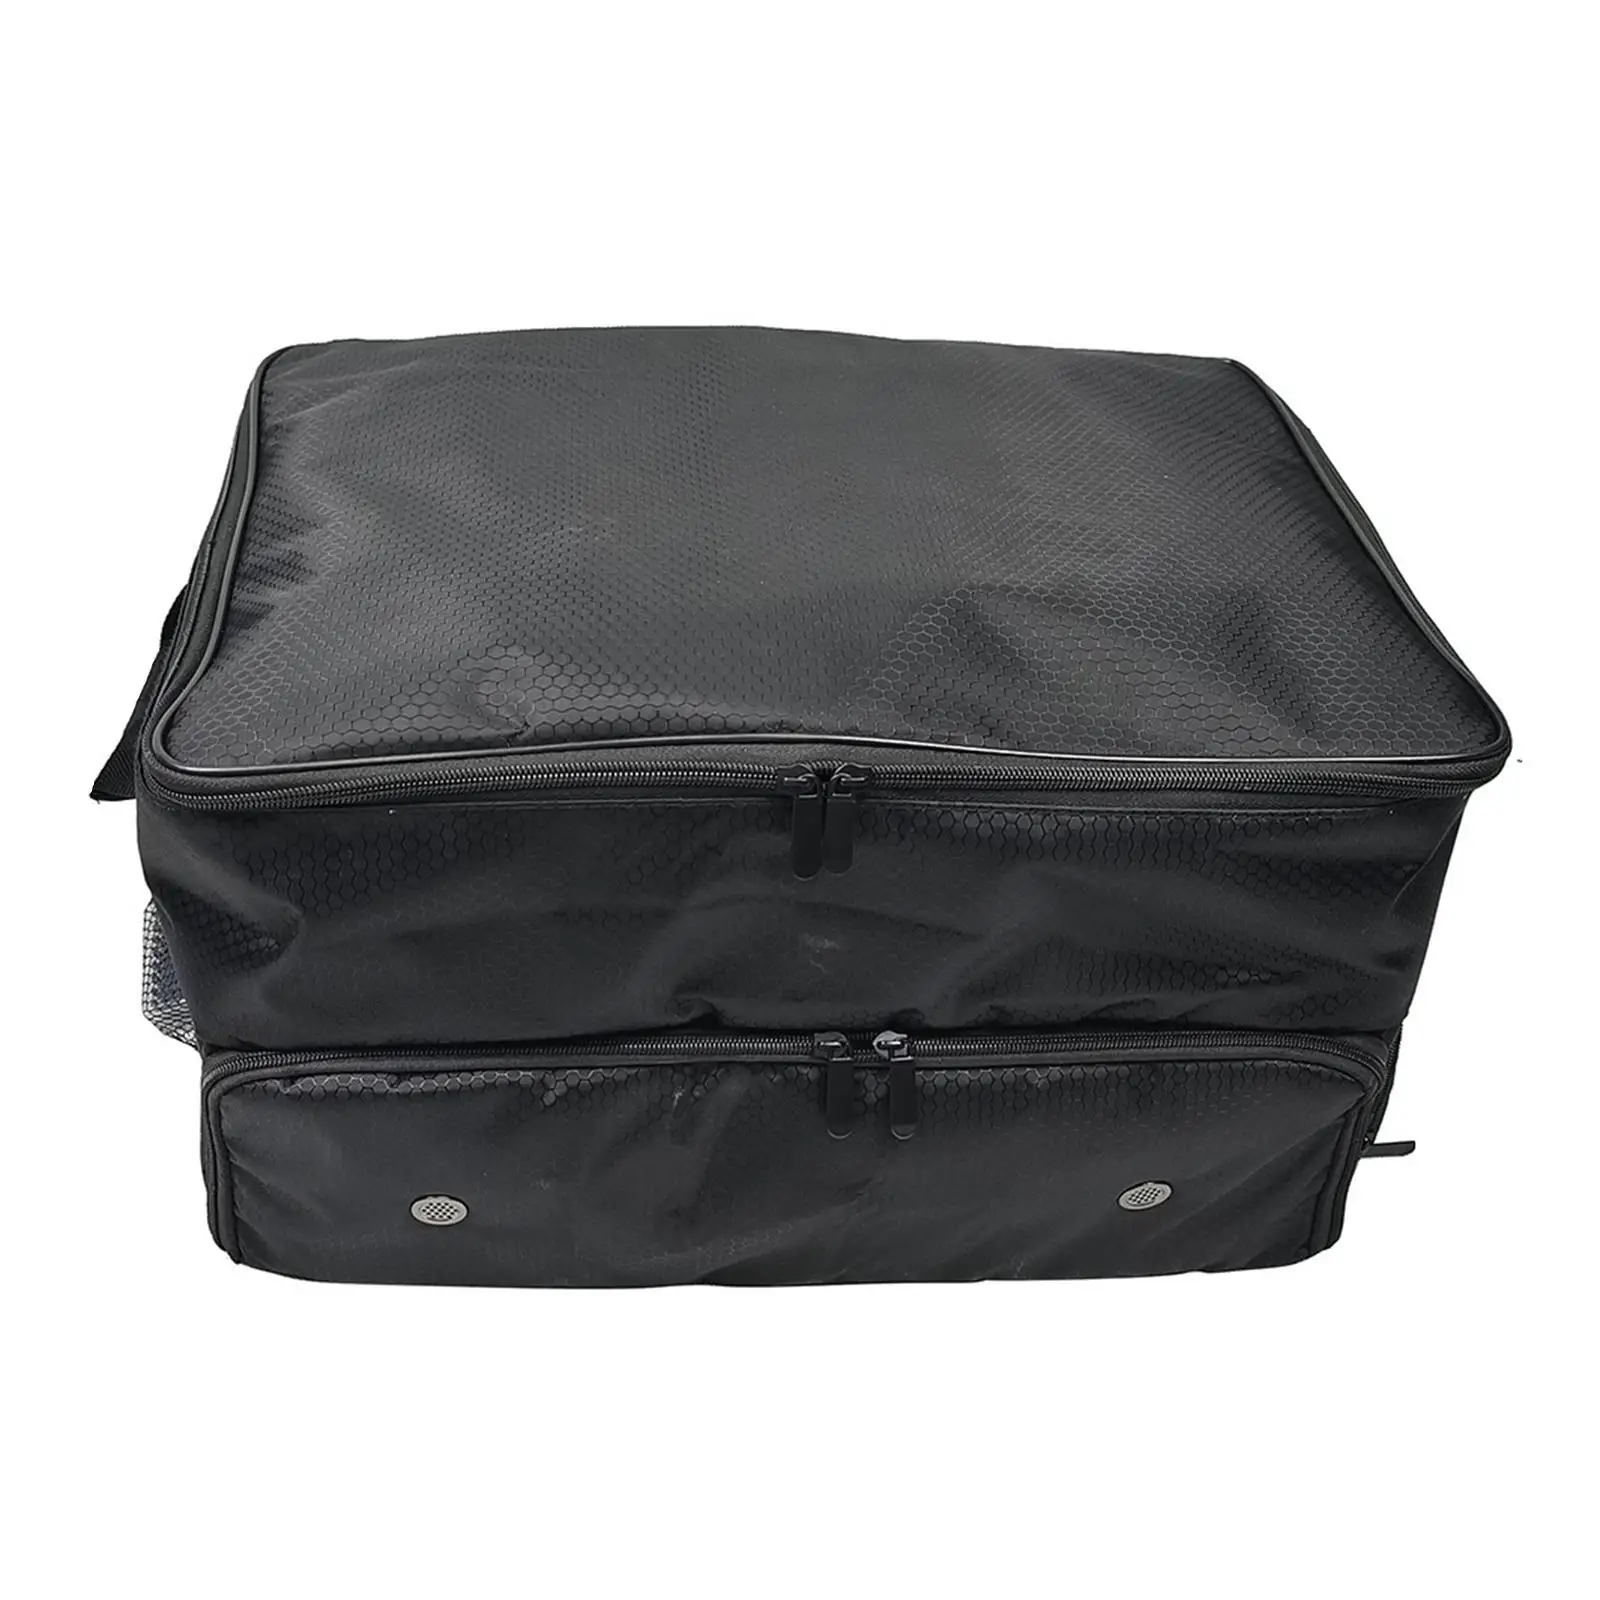 Органайзер для багажника для гольфа, складной багажник для хранения предметов первой необходимости, дорожная сумка, шкафчик для одежды, отличная идея подарка для игроков в гольф - 5